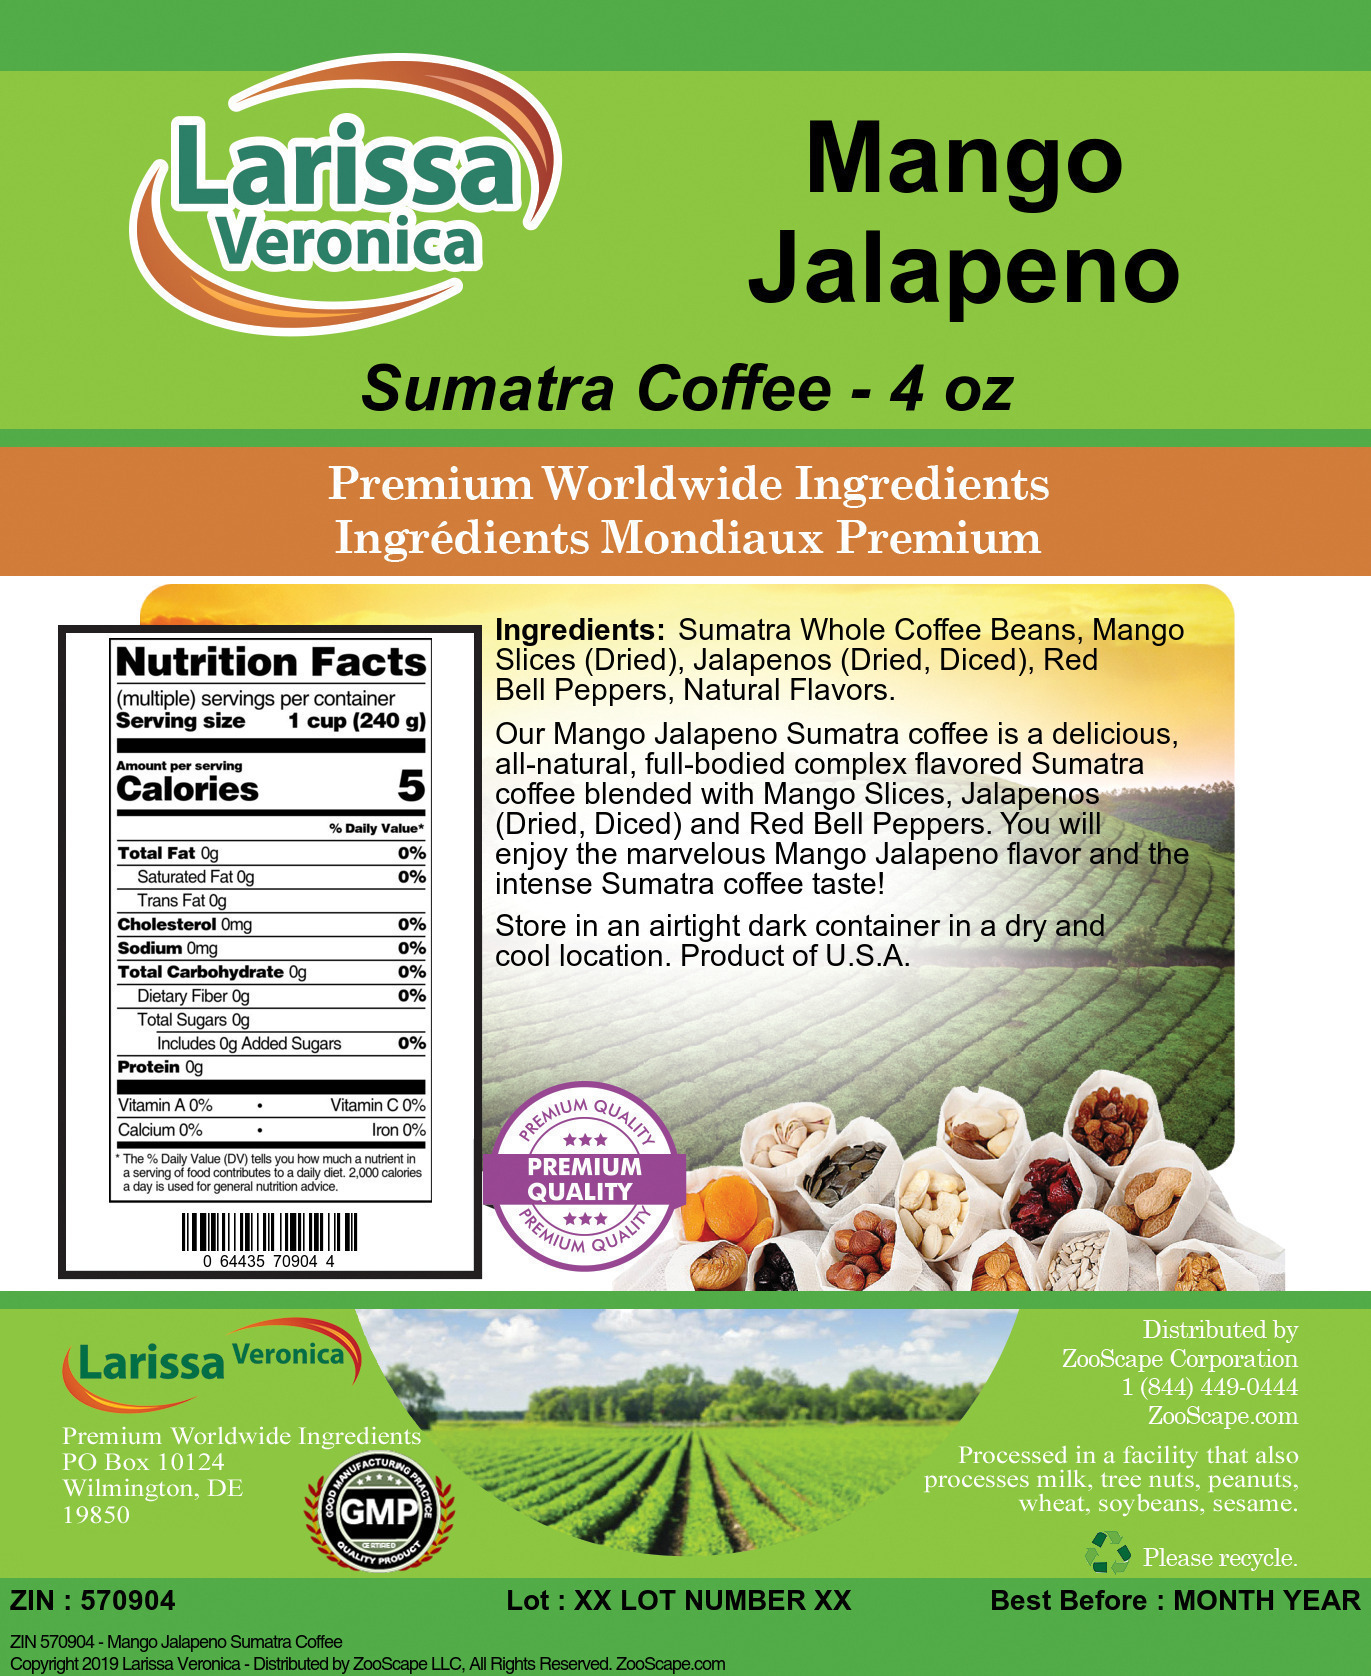 Mango Jalapeno Sumatra Coffee - Label